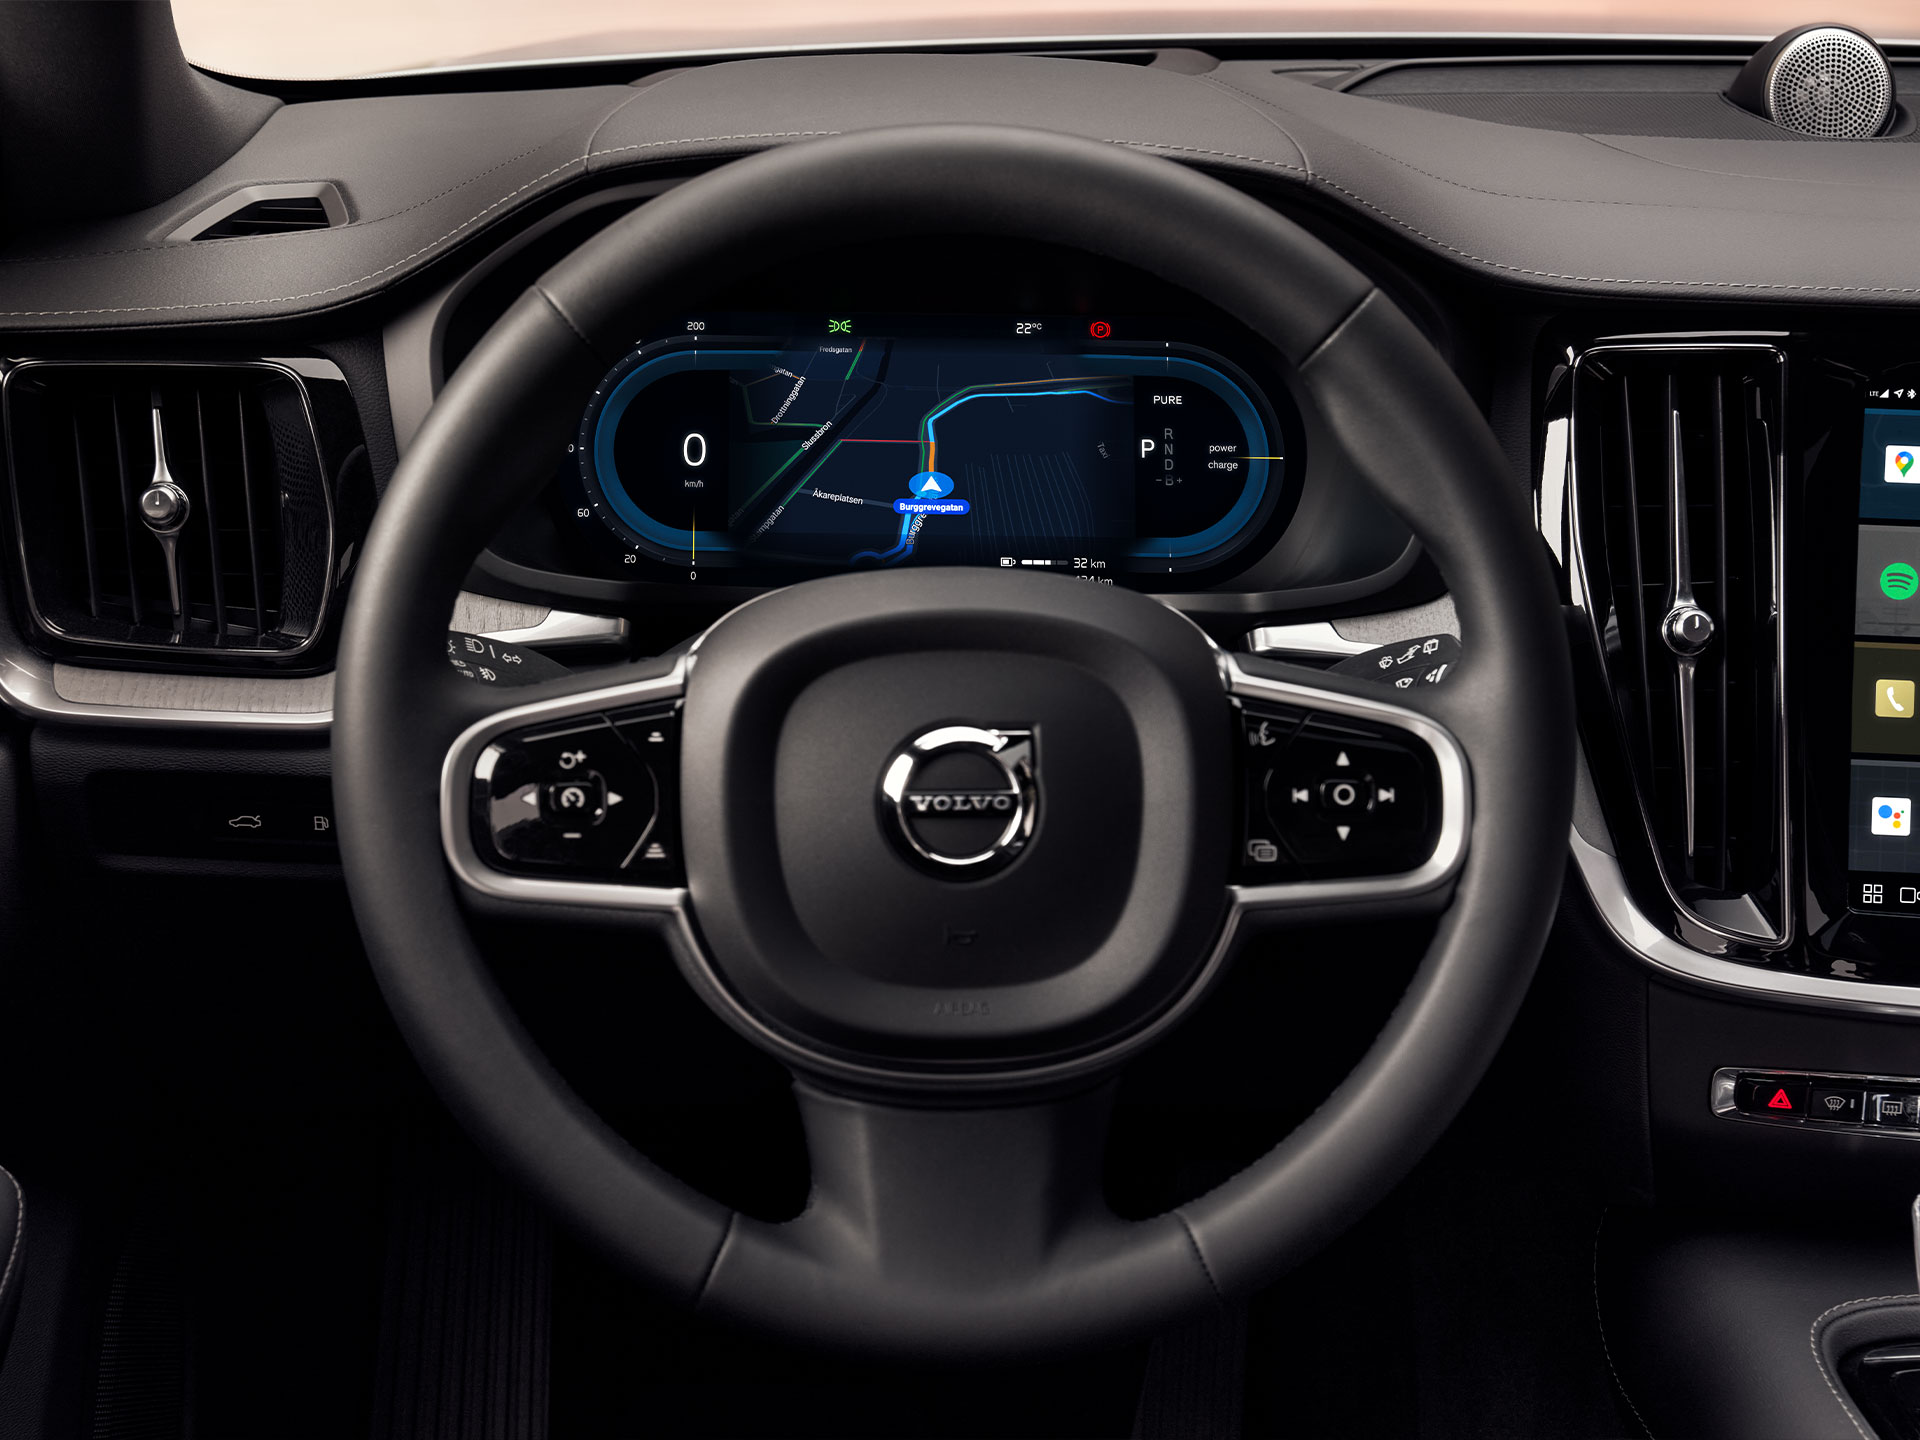 Displej komunikačního rozhraní řidiče v plug-in hybridním voze Volvo XC60 Recharge.